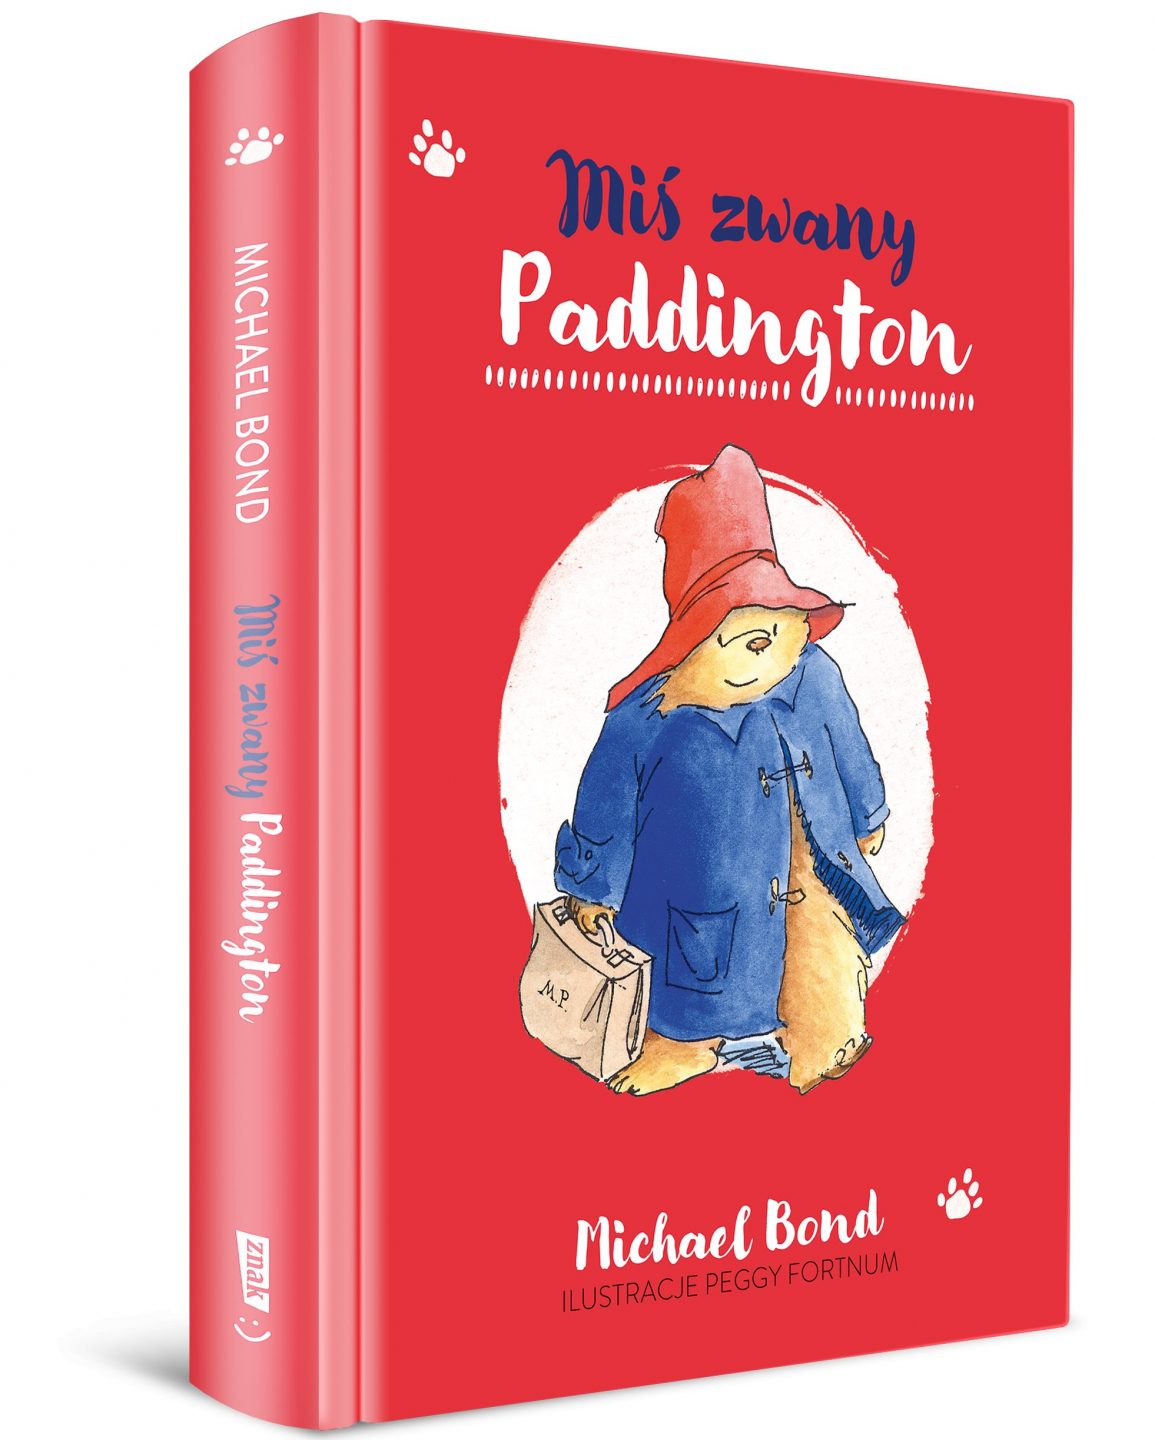 Okładka książki: Miś zwany Paddington